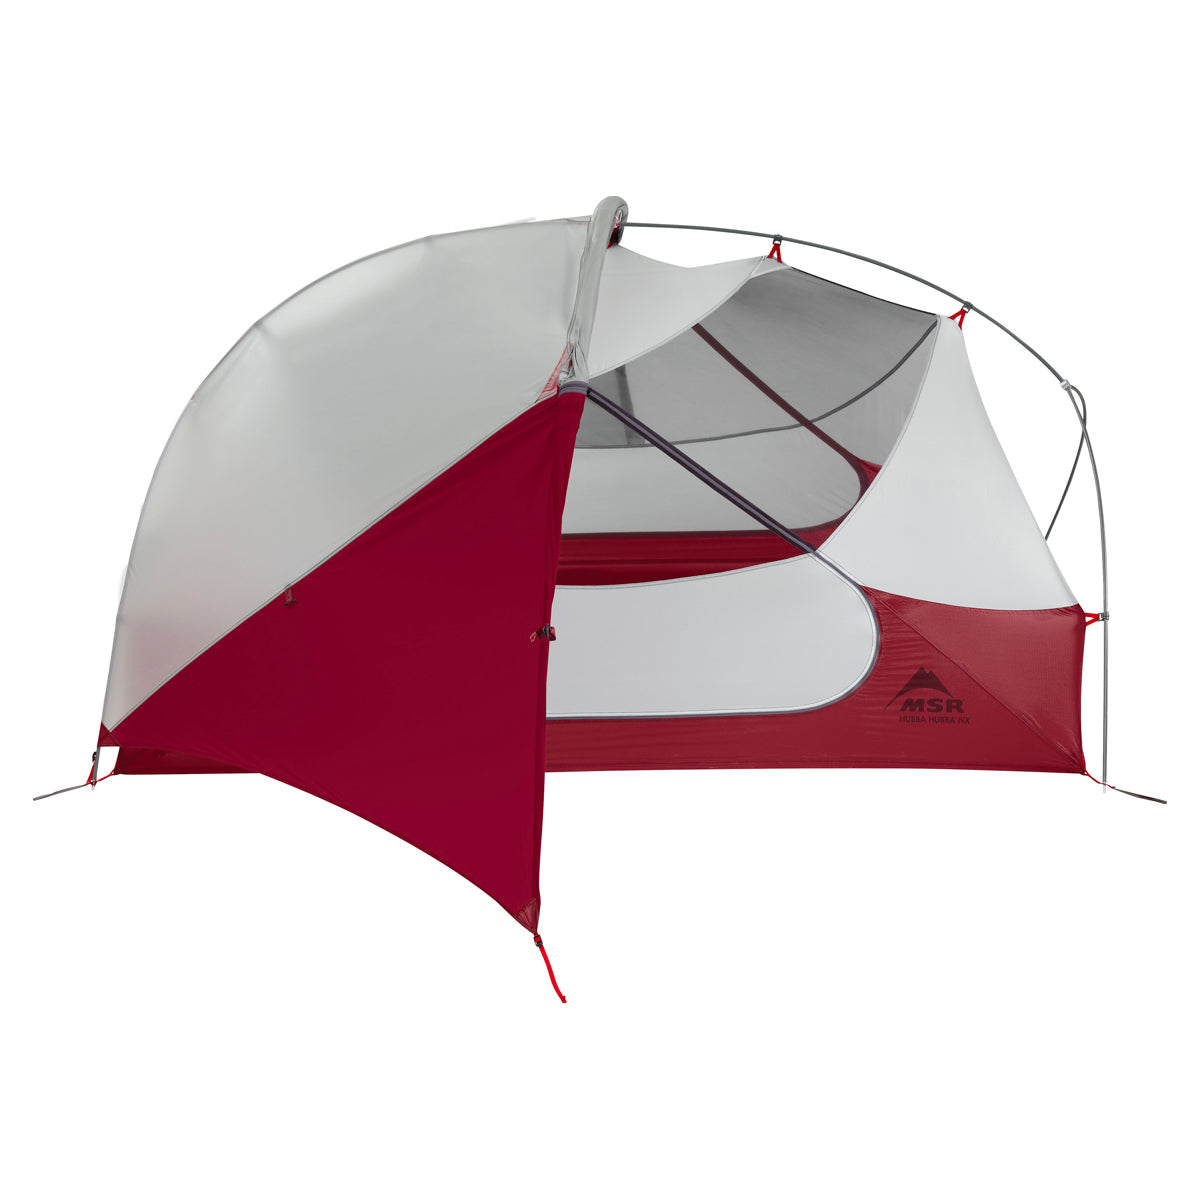 MSR Hubba Hubba NX 2 Person Tent - goHUNT Shop